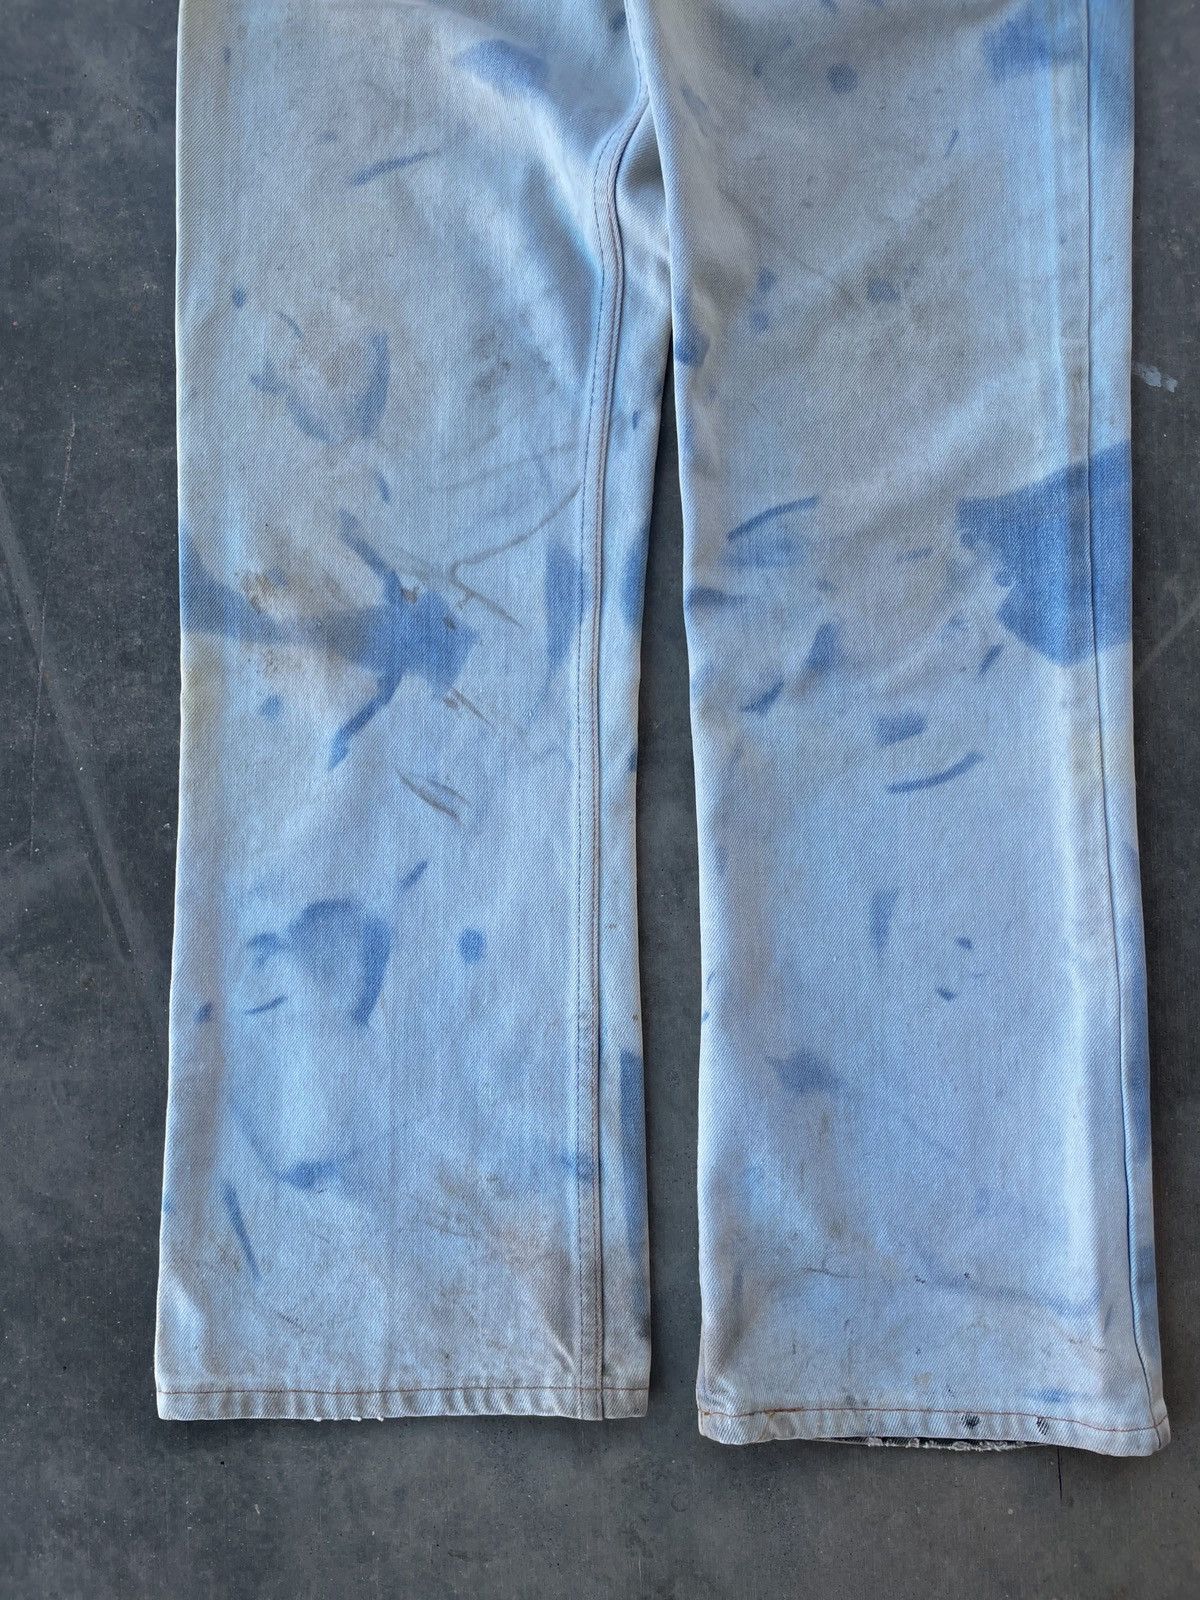 Vintage Vintage 70’s Sun Bleached Denim Jeans Size 32 Size US 32 / EU 48 - 4 Preview